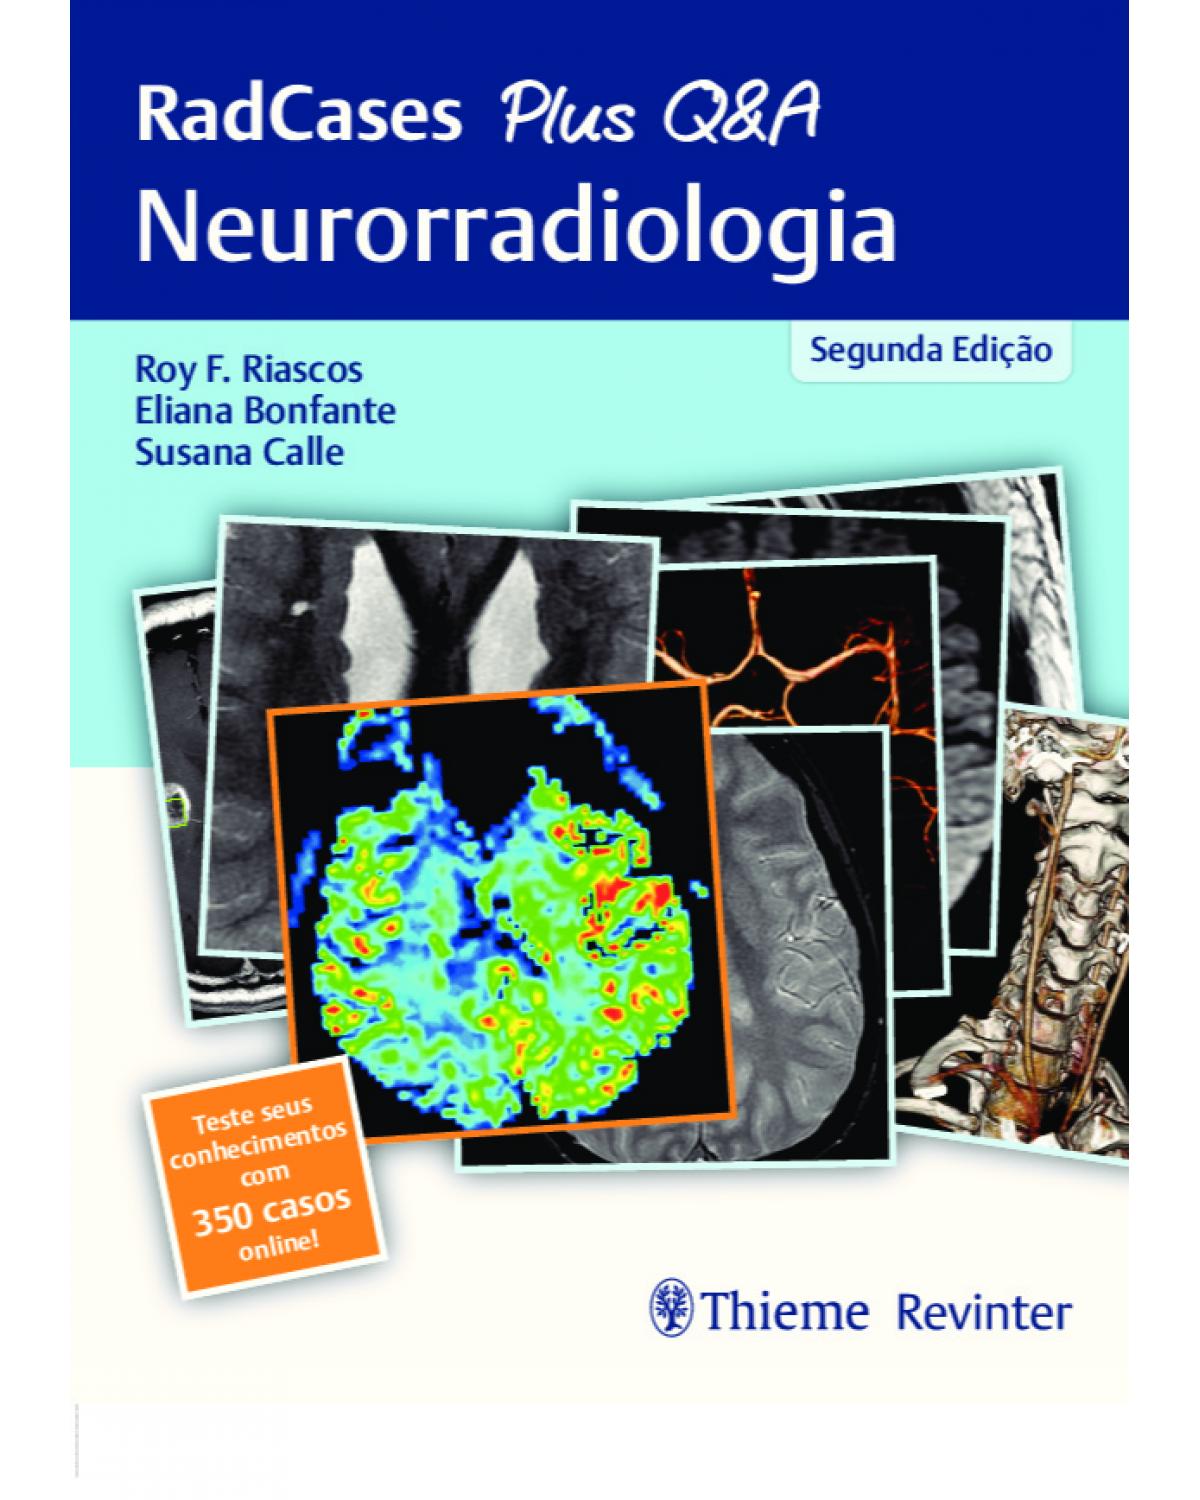 RadCases Plus Q&A - Neurorradiologia - 2ª Edição | 2020